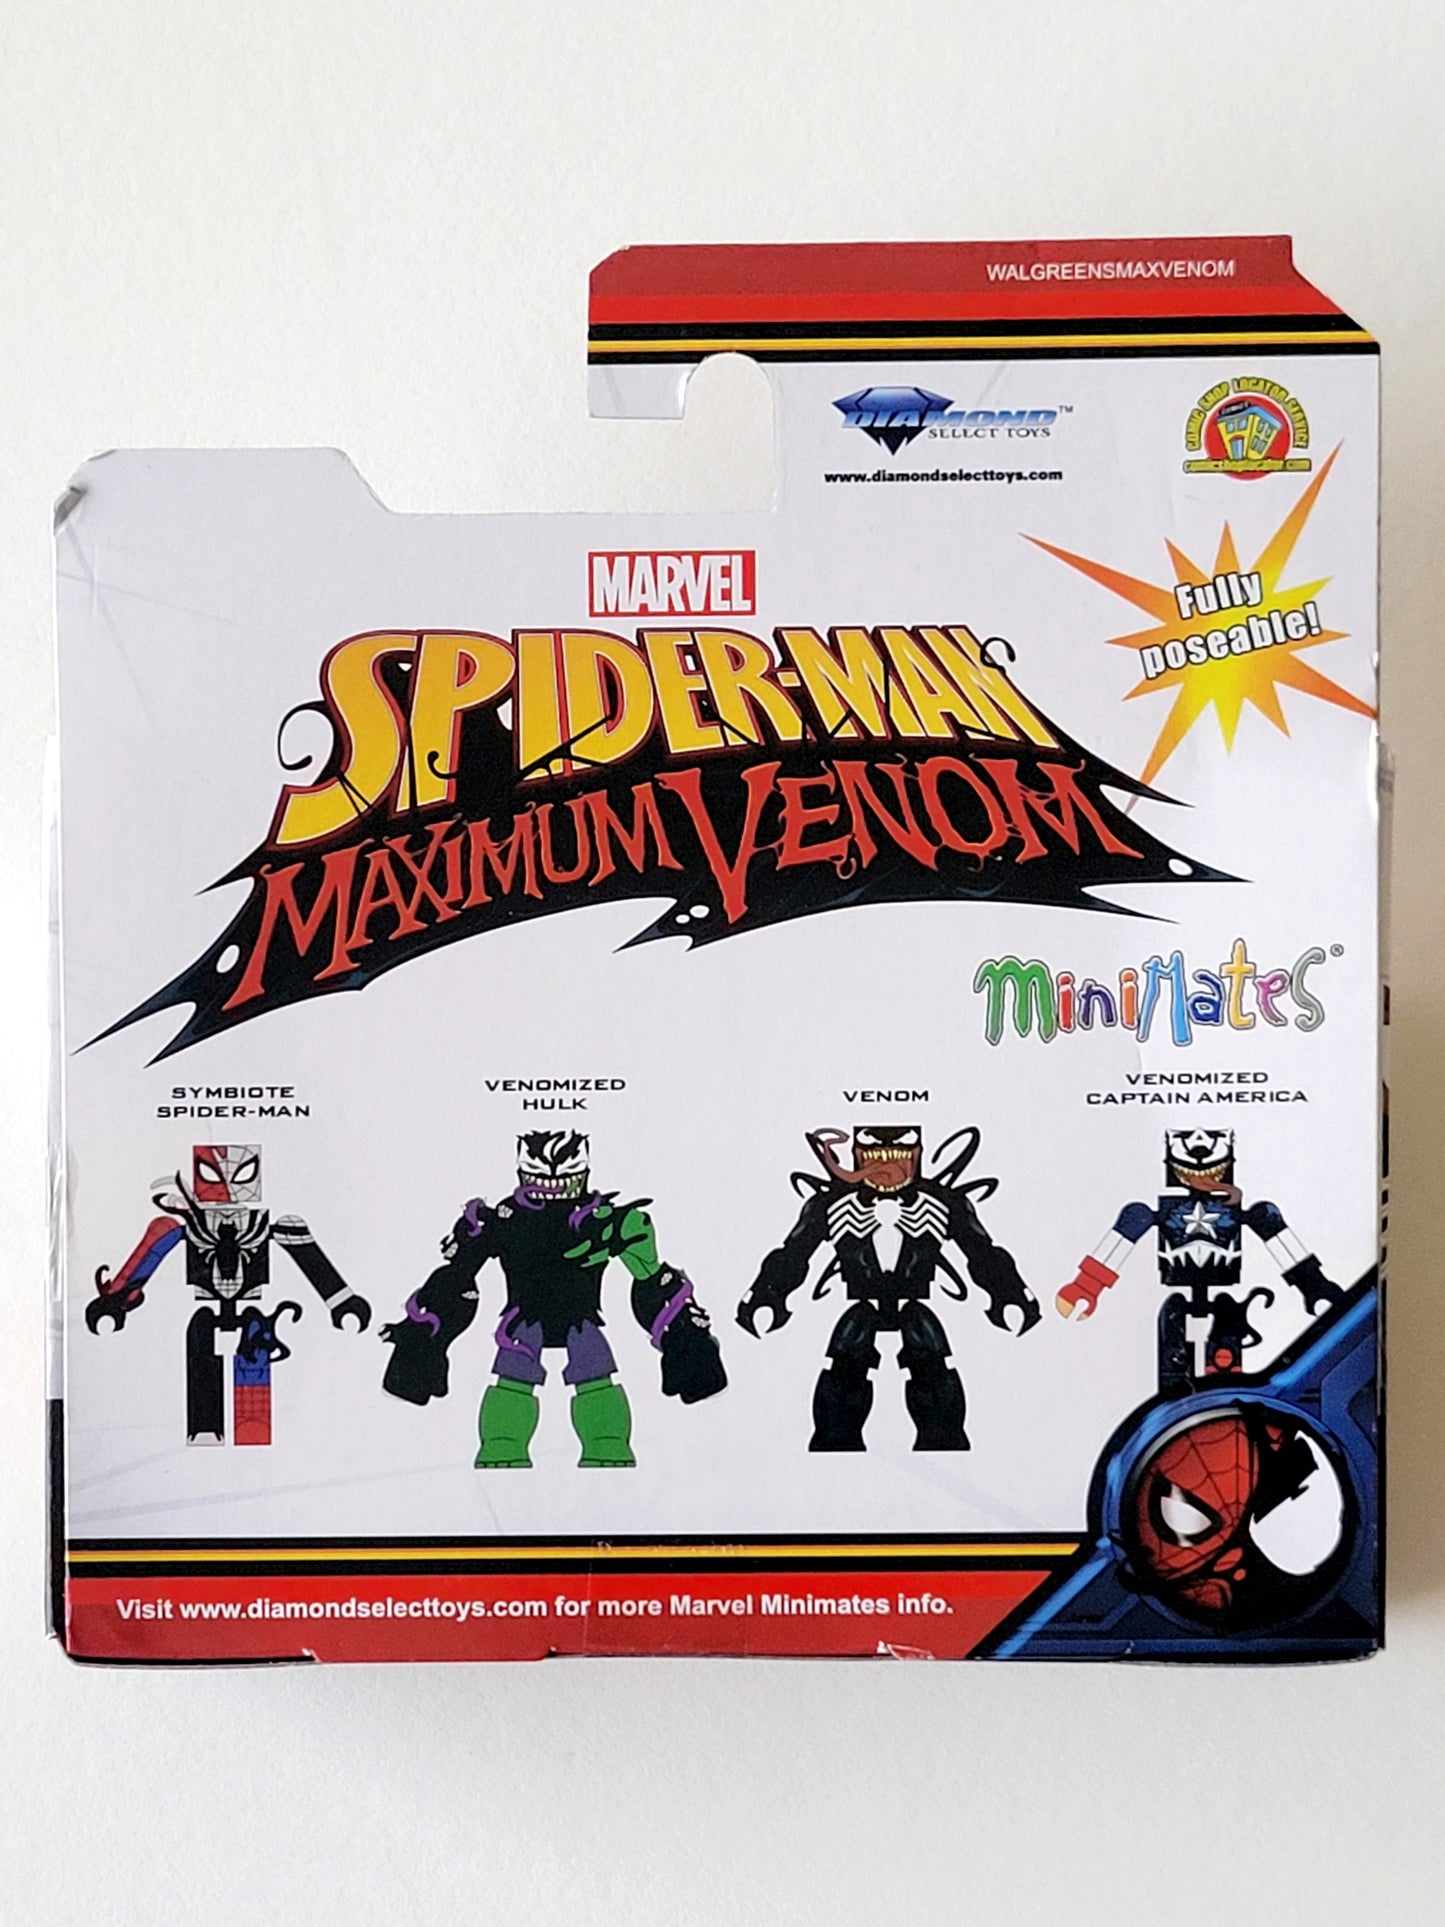 Spider-Man Maximum Venom Minimates Exclusive Venom & Venomized Captain America Action Figures